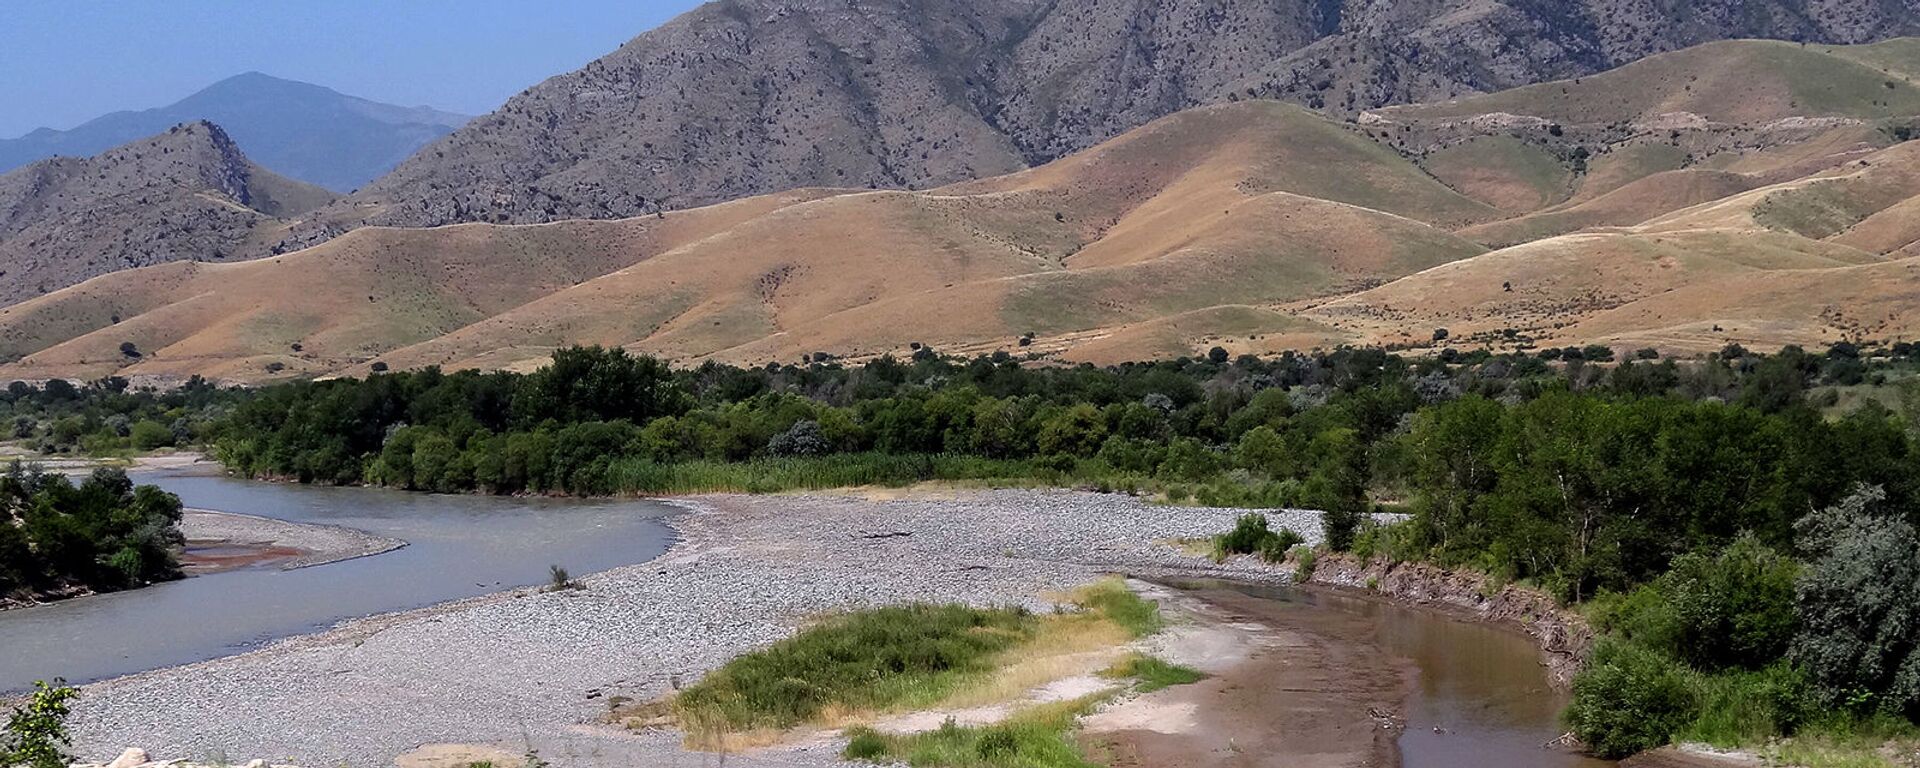 Река Аракс с границами между Карабахом, Ираном и Азербайджаном - Sputnik Армения, 1920, 15.03.2021